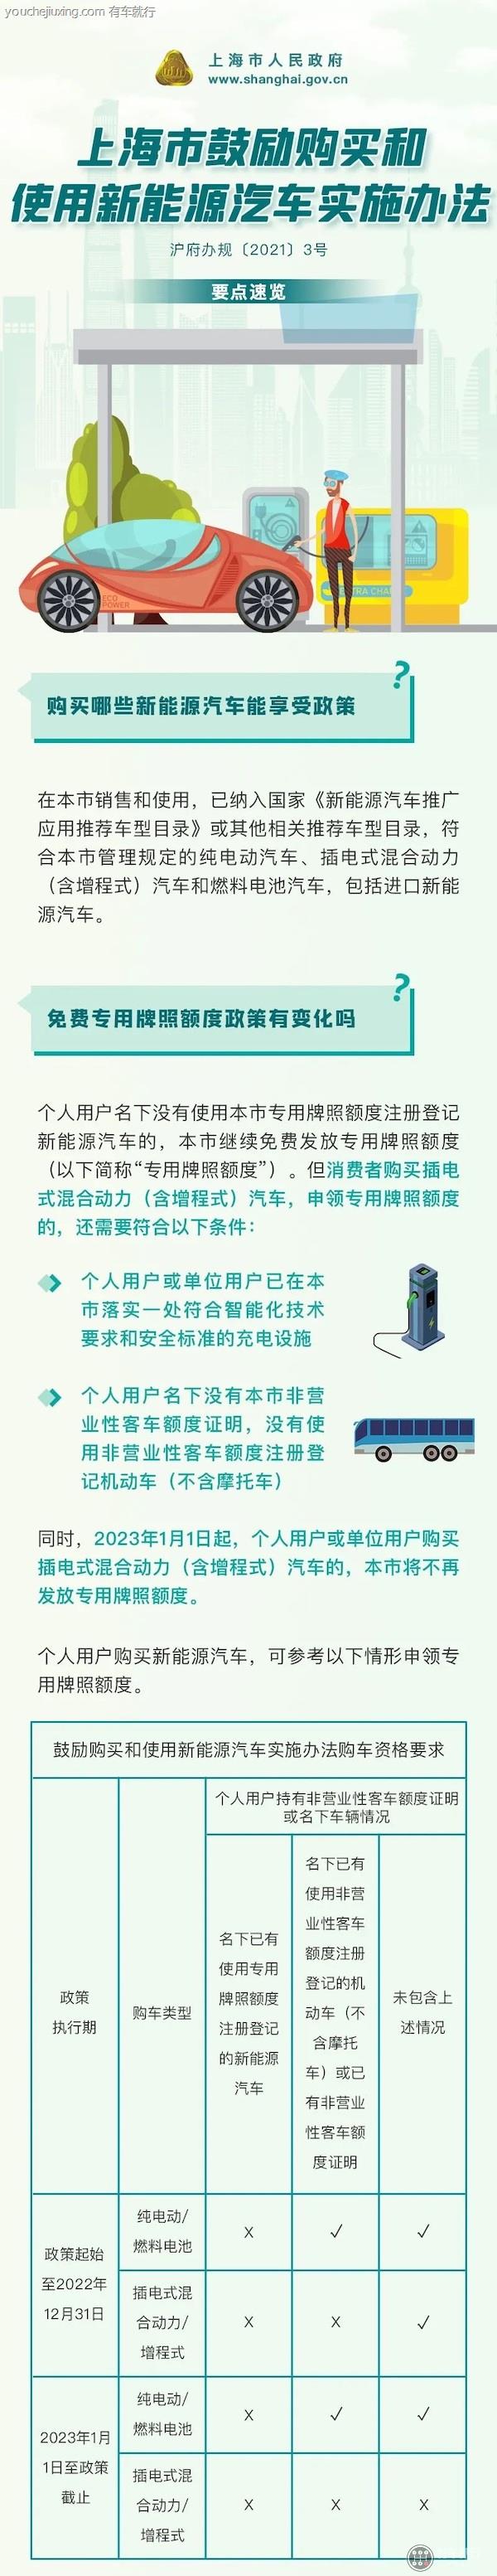 上海市鼓励购买和使用新能源汽车实施办法